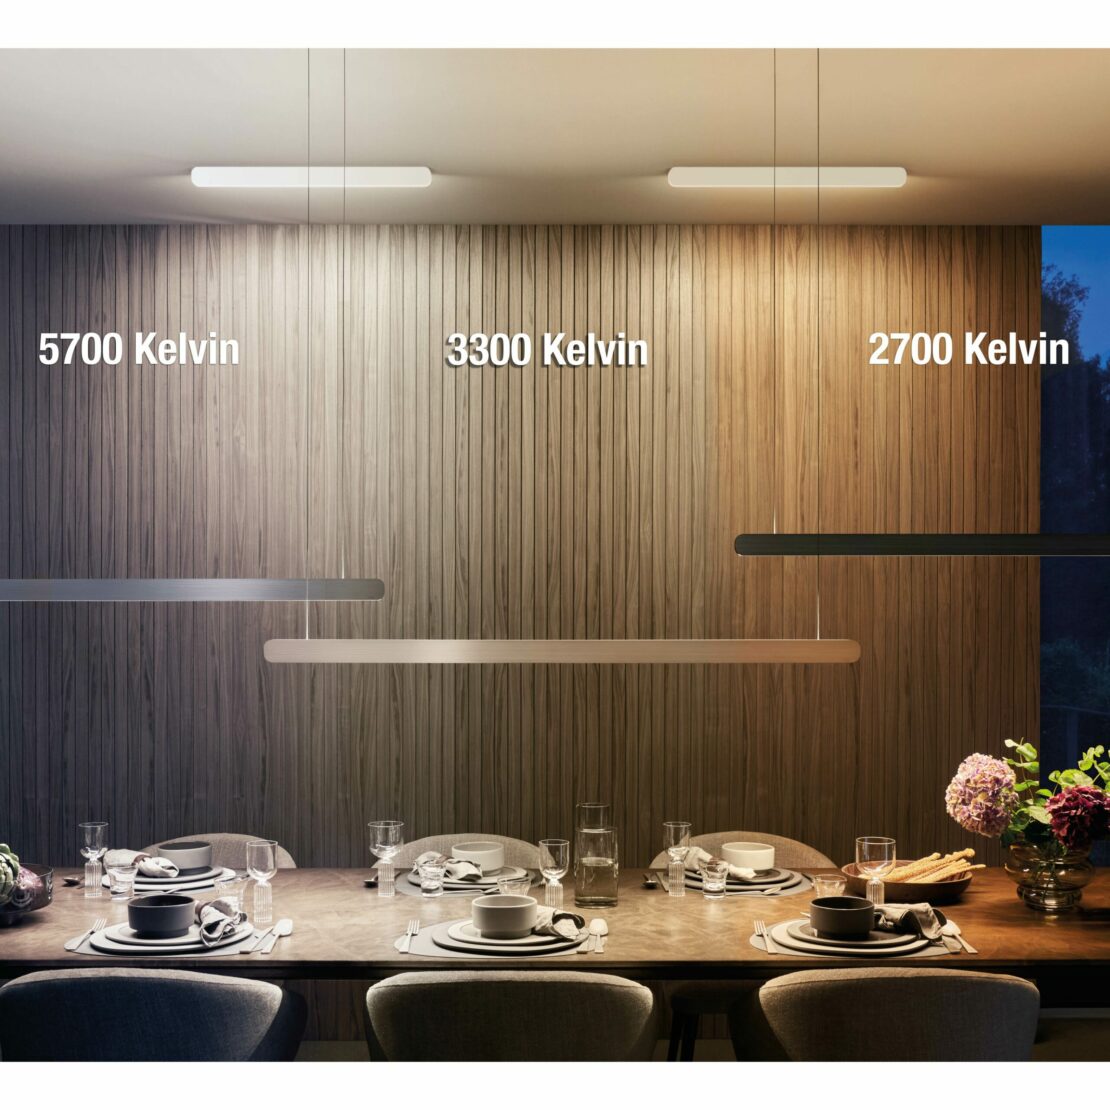 Pendelleuchte über einem Esstisch mit verschiedenen Beispielen für die Lichtfarbe: tageslichtweiße 5700 Kelvin, helles Warmweiß bis Kaltweiß 3300 Kelvin, Warmweiß 2700 Kelvin